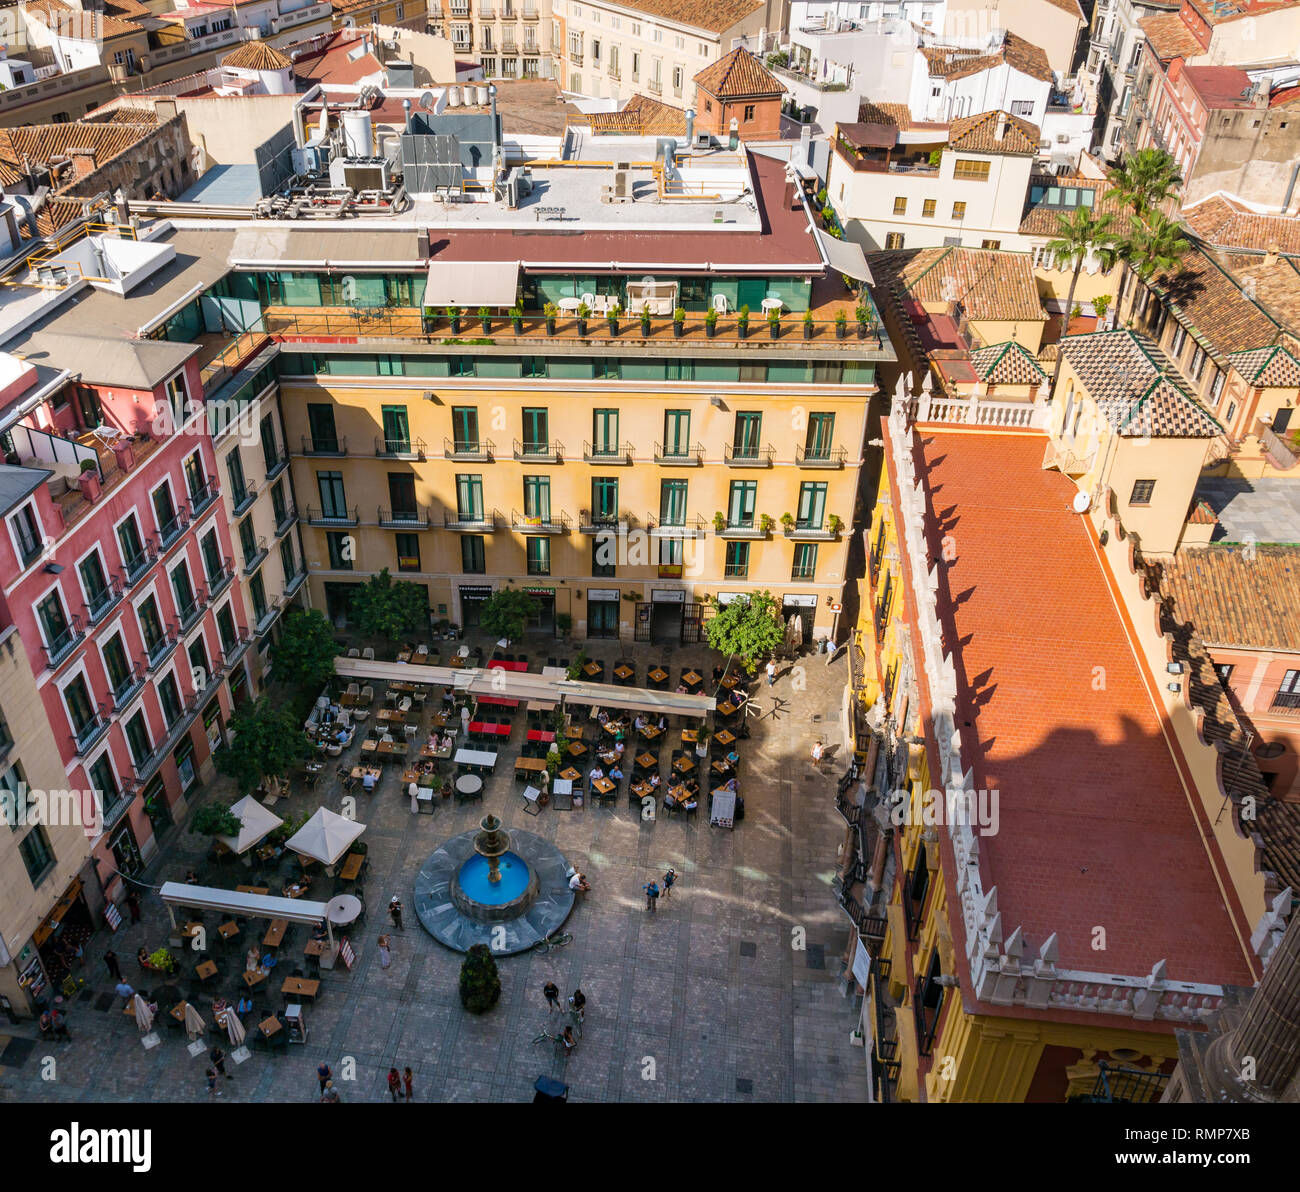 Ansicht von oben von alten Häusern, engen Gassen und Cafe Tabellen in Plaza Obispo mit bischöflicher Palast, die Altstadt von Malaga, Andalusien, Spanien Stockfoto